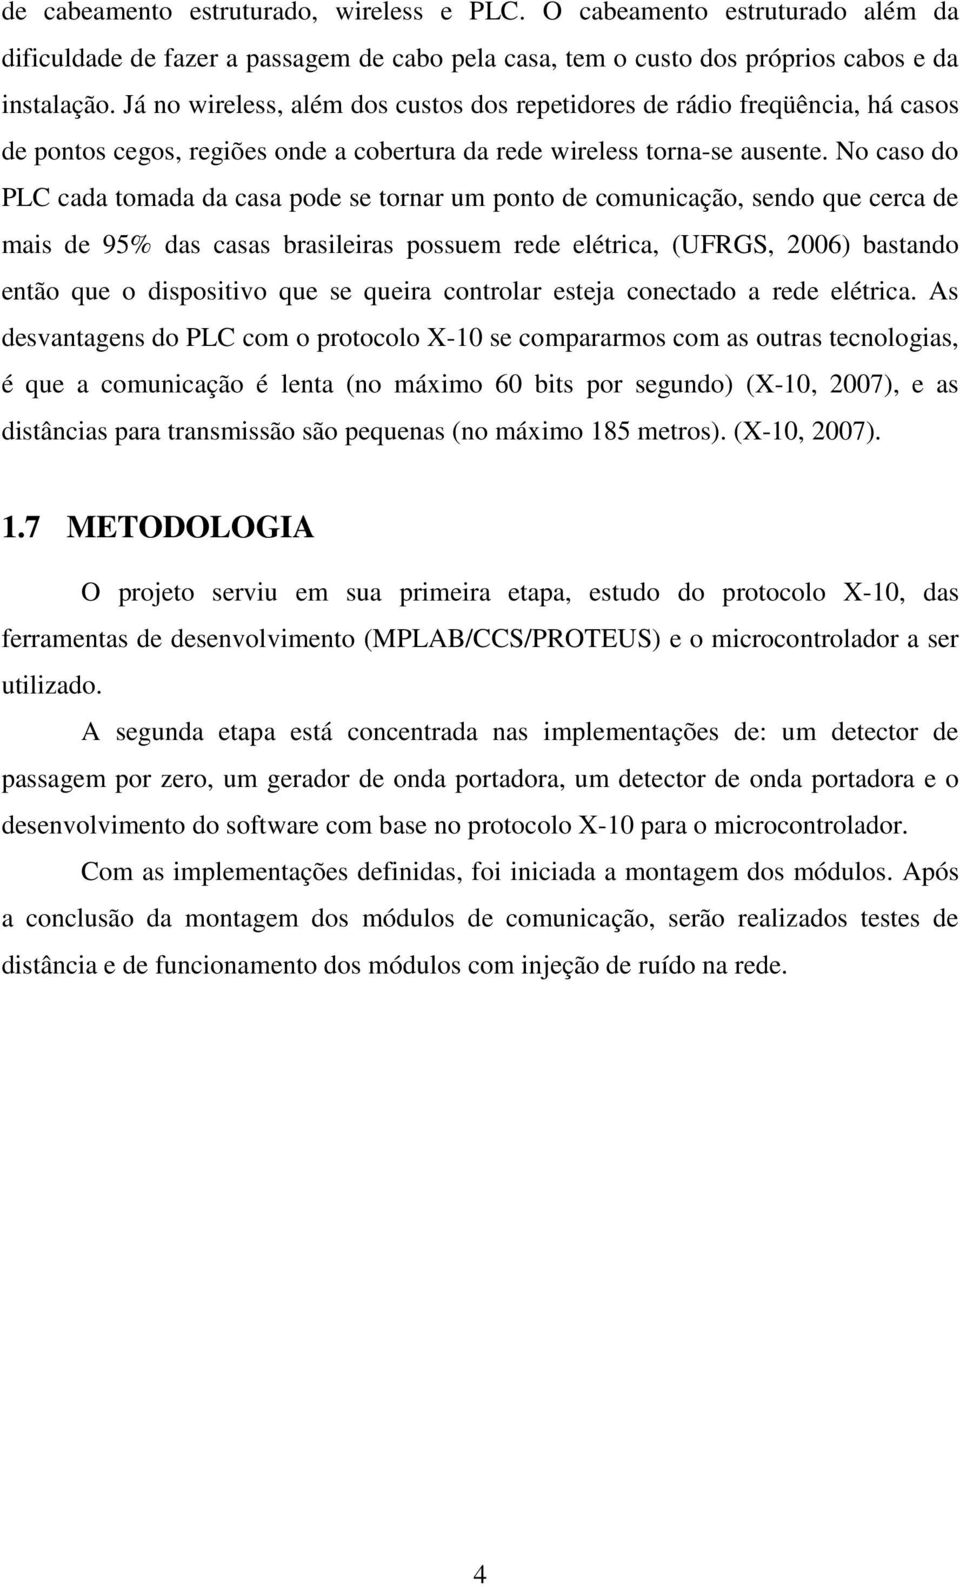 No caso do PLC cada tomada da casa pode se tornar um ponto de comunicação, sendo que cerca de mais de 95% das casas brasileiras possuem rede elétrica, (UFRGS, 2006) bastando então que o dispositivo